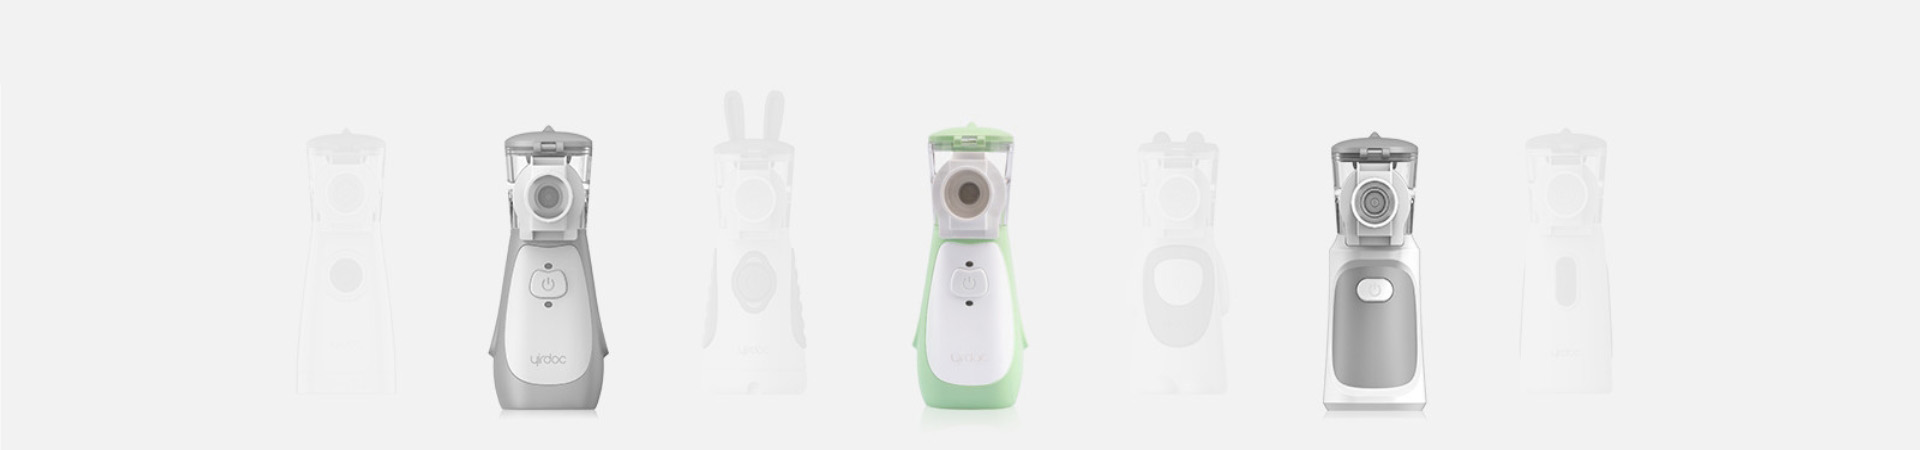 qualidade Casa Bluetooth Mesh Nebulizer Usb Portable Nebulizer inteligente fábrica